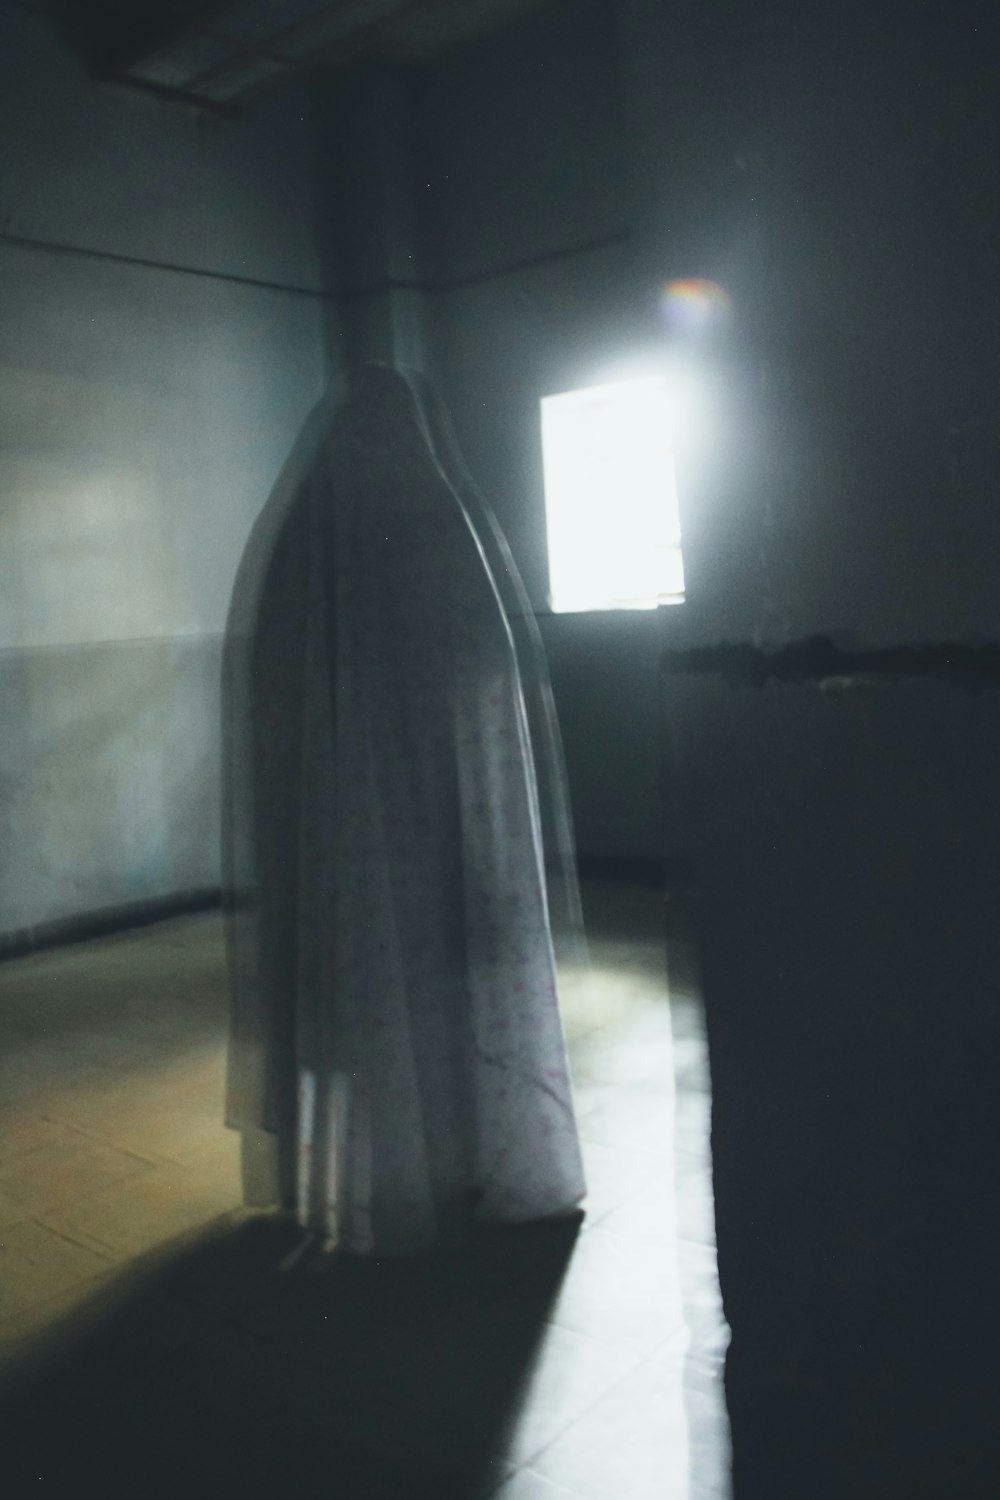 Una figura fantasmal de pie en una habitación oscura